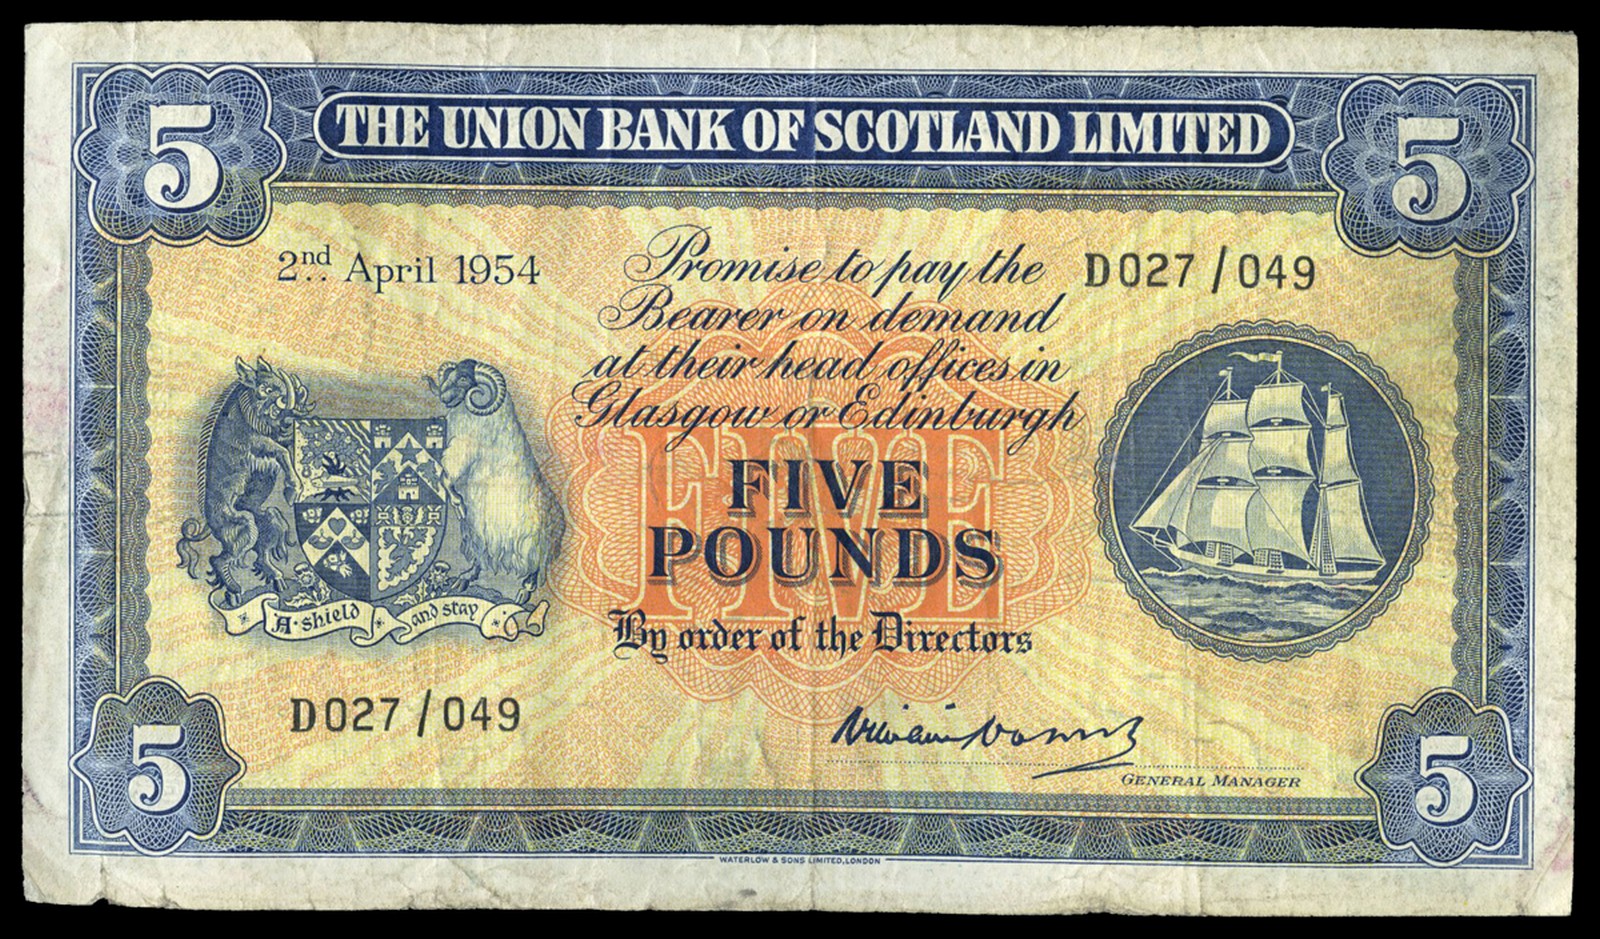 BRITISH BANKNOTES, The Union Bank of Scotland Ltd, Five Pounds, 2 April 1954, D 027/049, signature